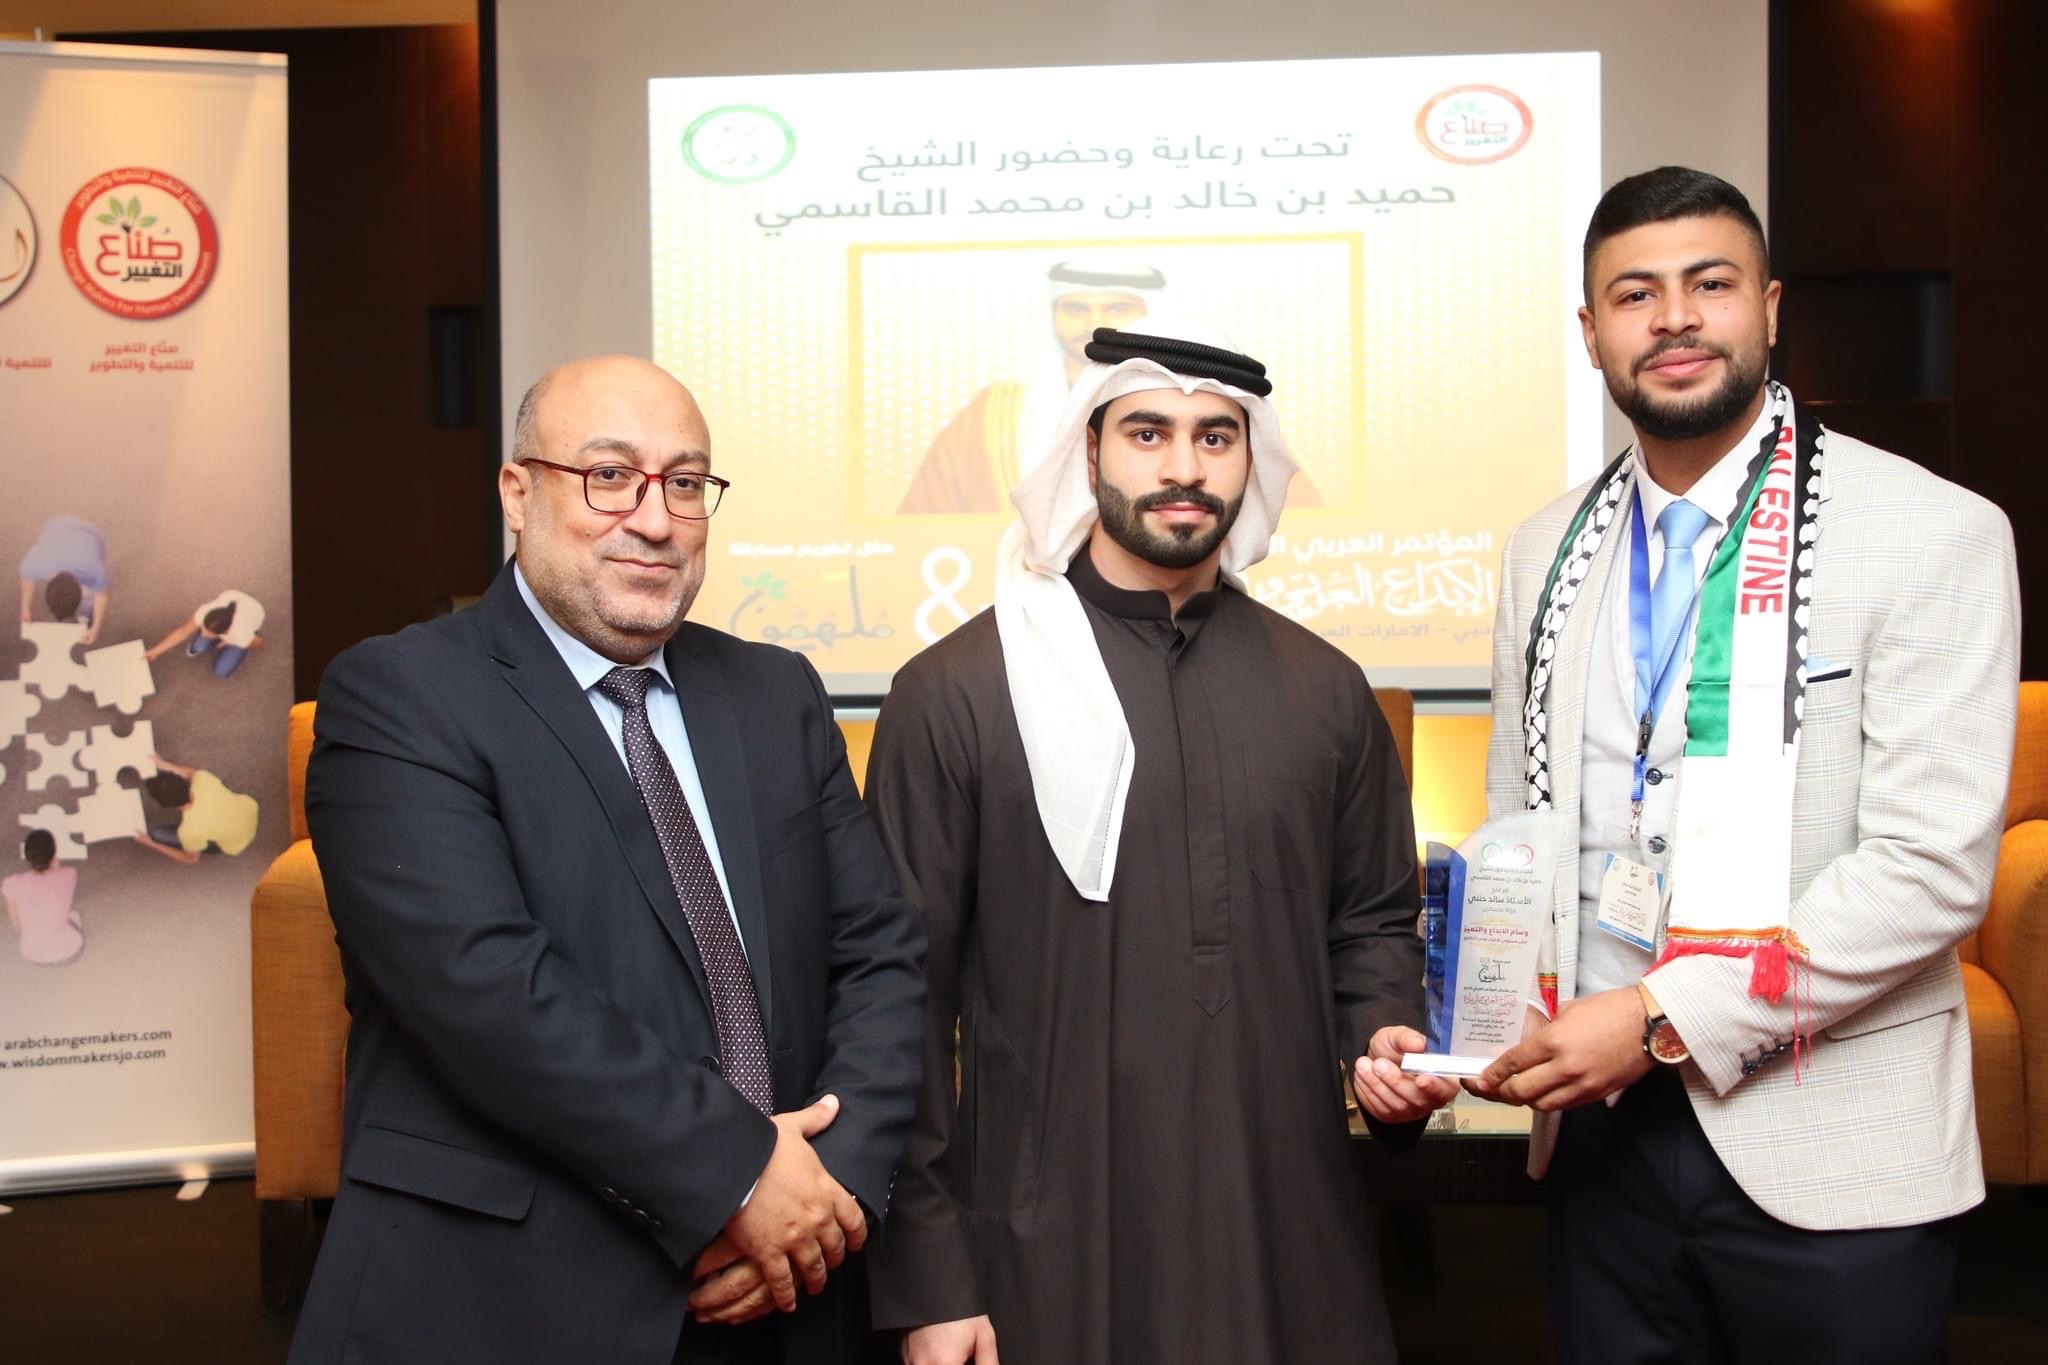 طالب من كلية الهندسة في الجامعة العربية الأمريكية يحصل على وسام الإبداع والتميز في مسابقة ملهمون 3 في دبي